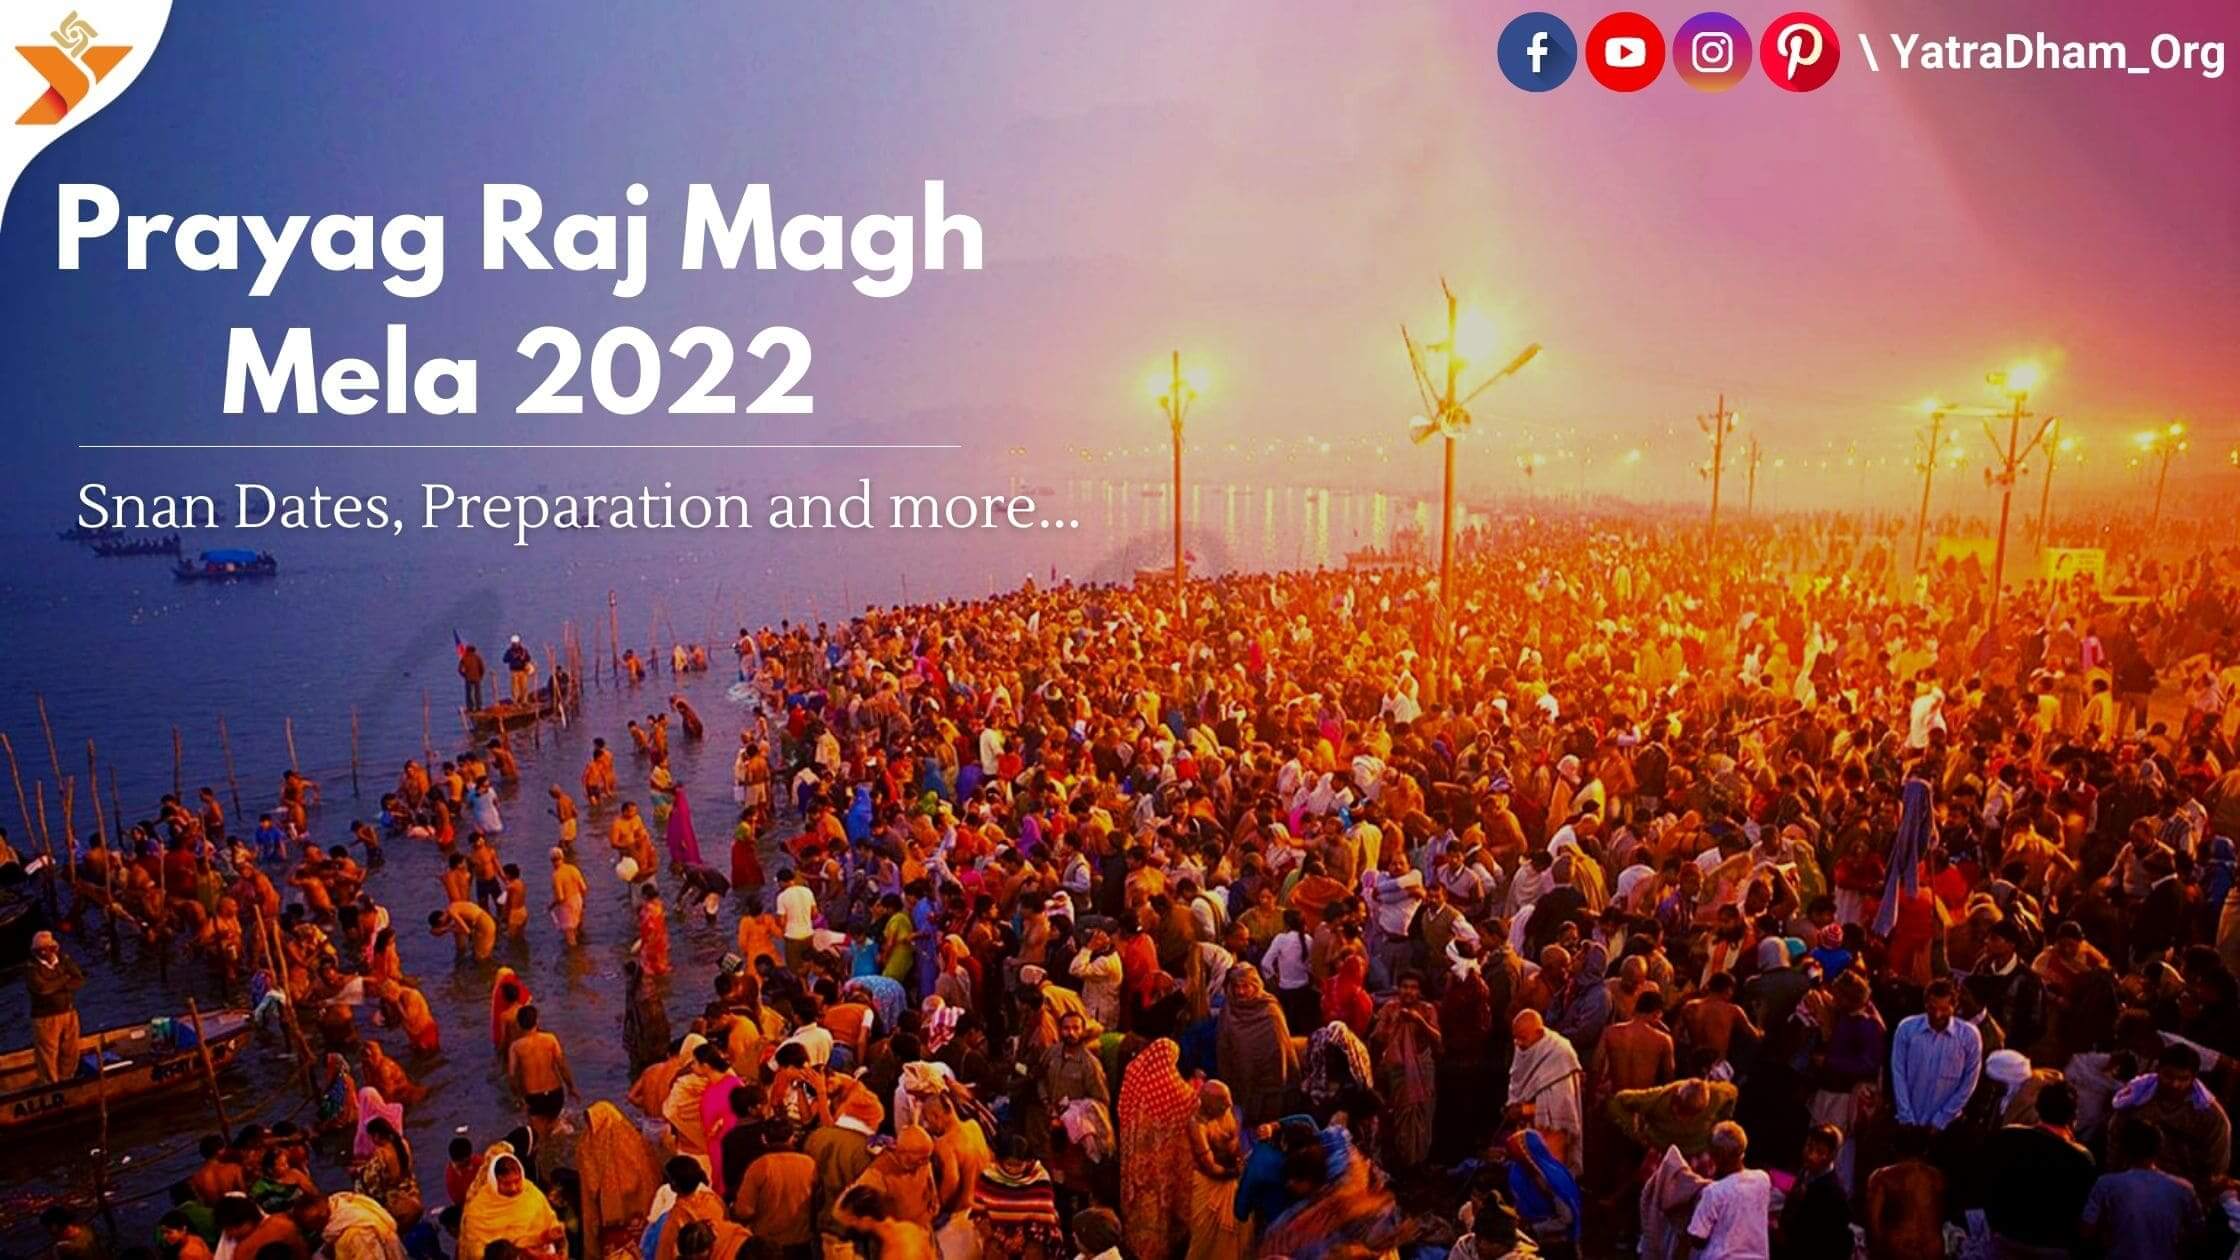 Prayagraj Magha Mela 2022